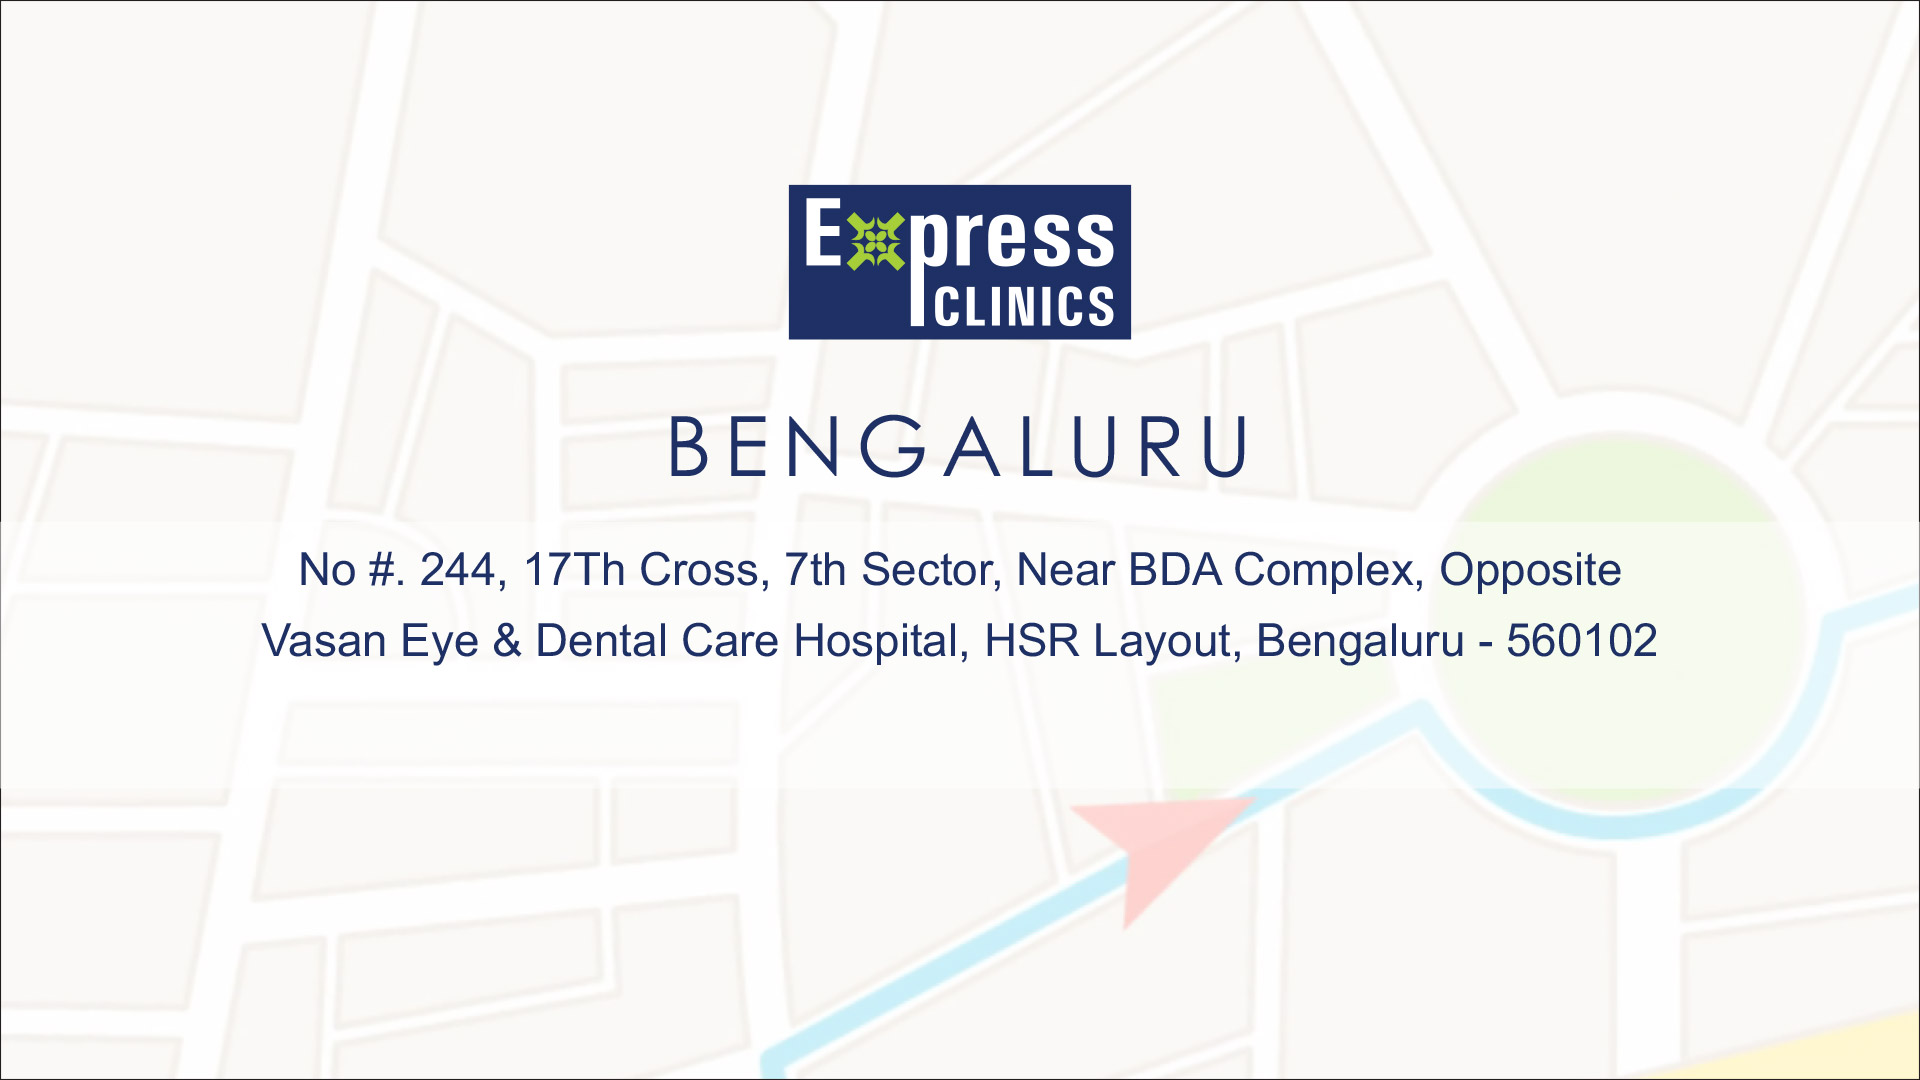 express clinics hsr layout